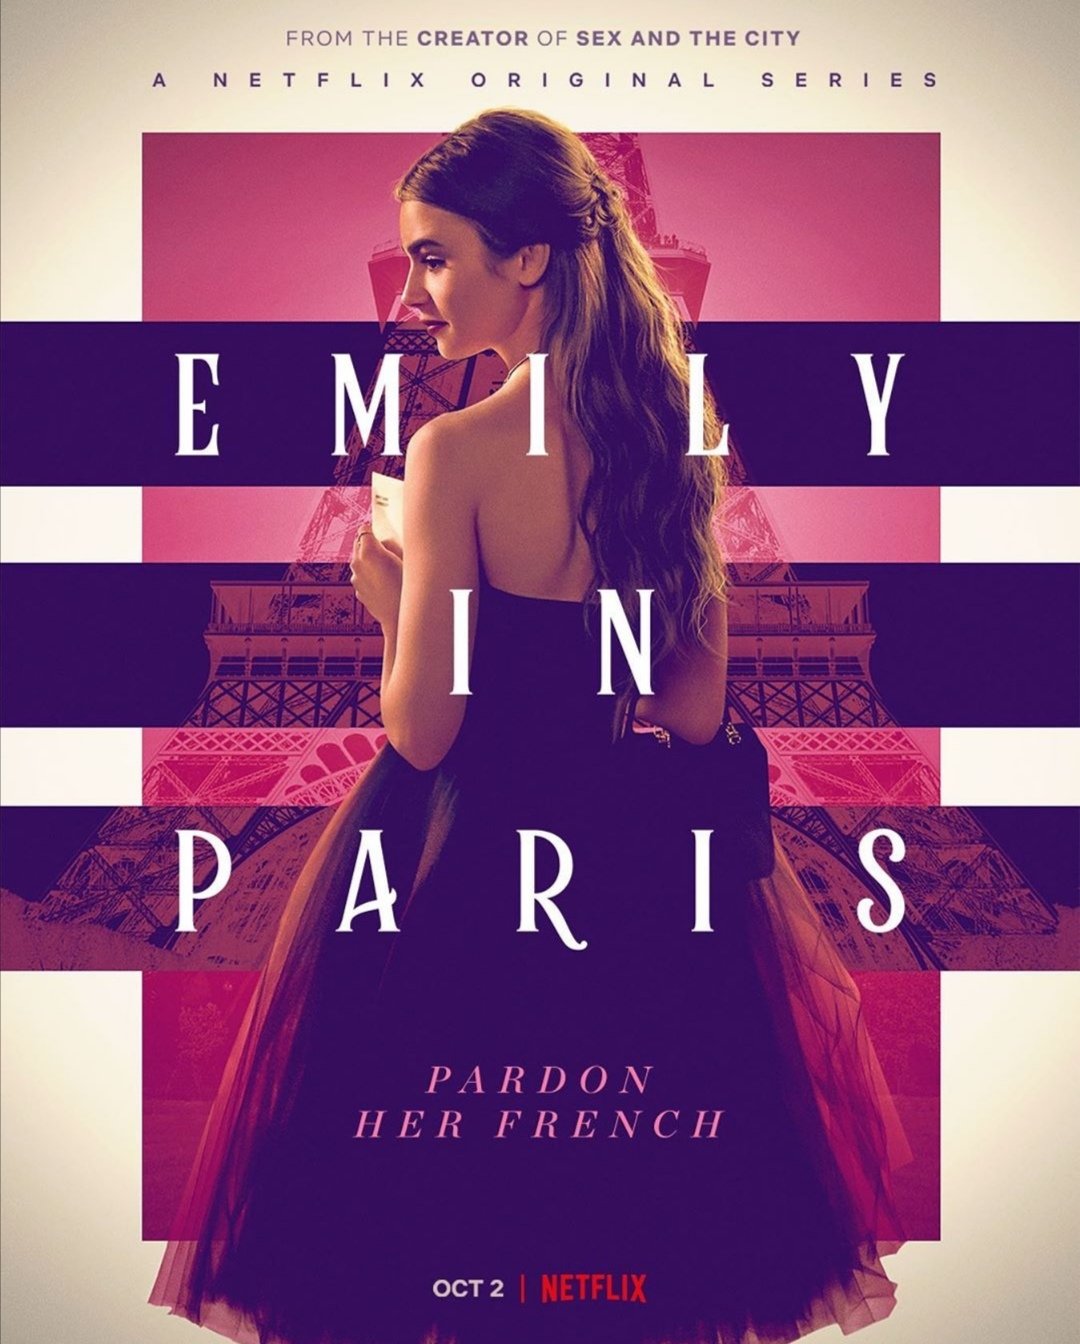 Netflix revela el tráiler y el póster oficial de "Emily in Paris"